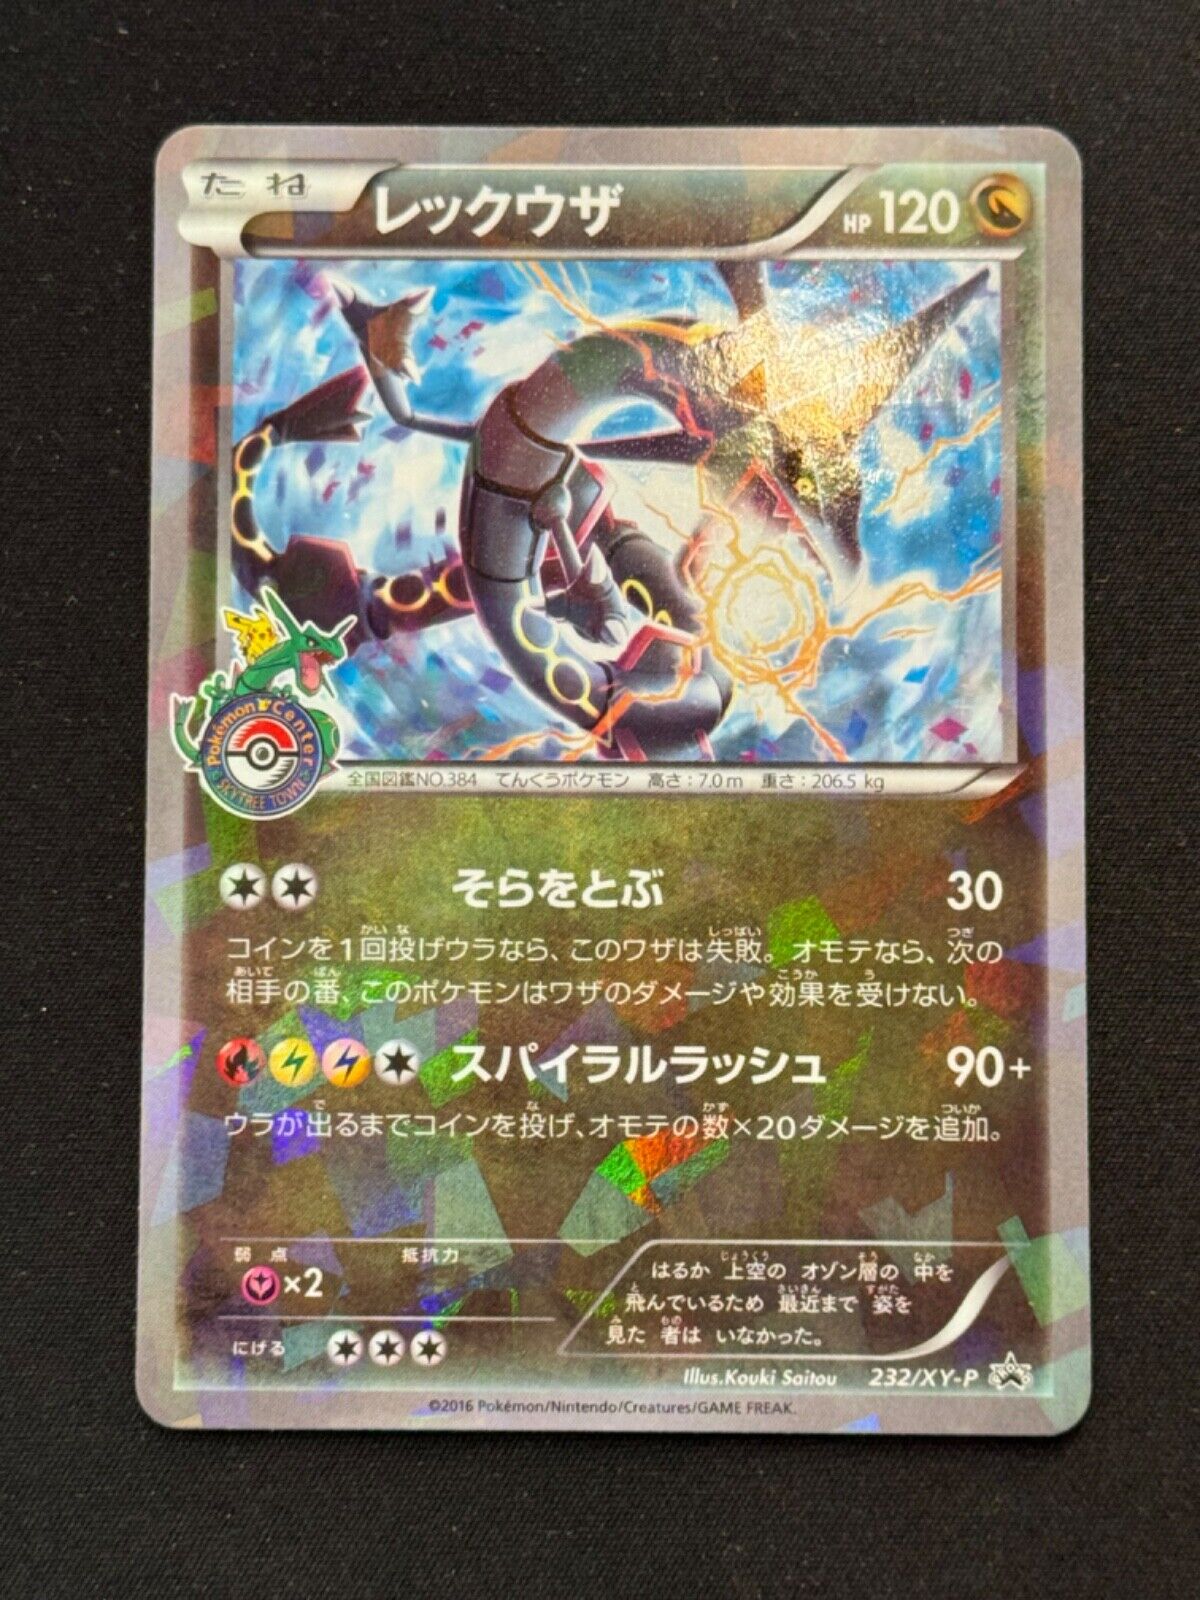 Rayquaza Shiny - 232/XY-P - 2016 Promo - HOLO - Pokemon Japanese Card Japan